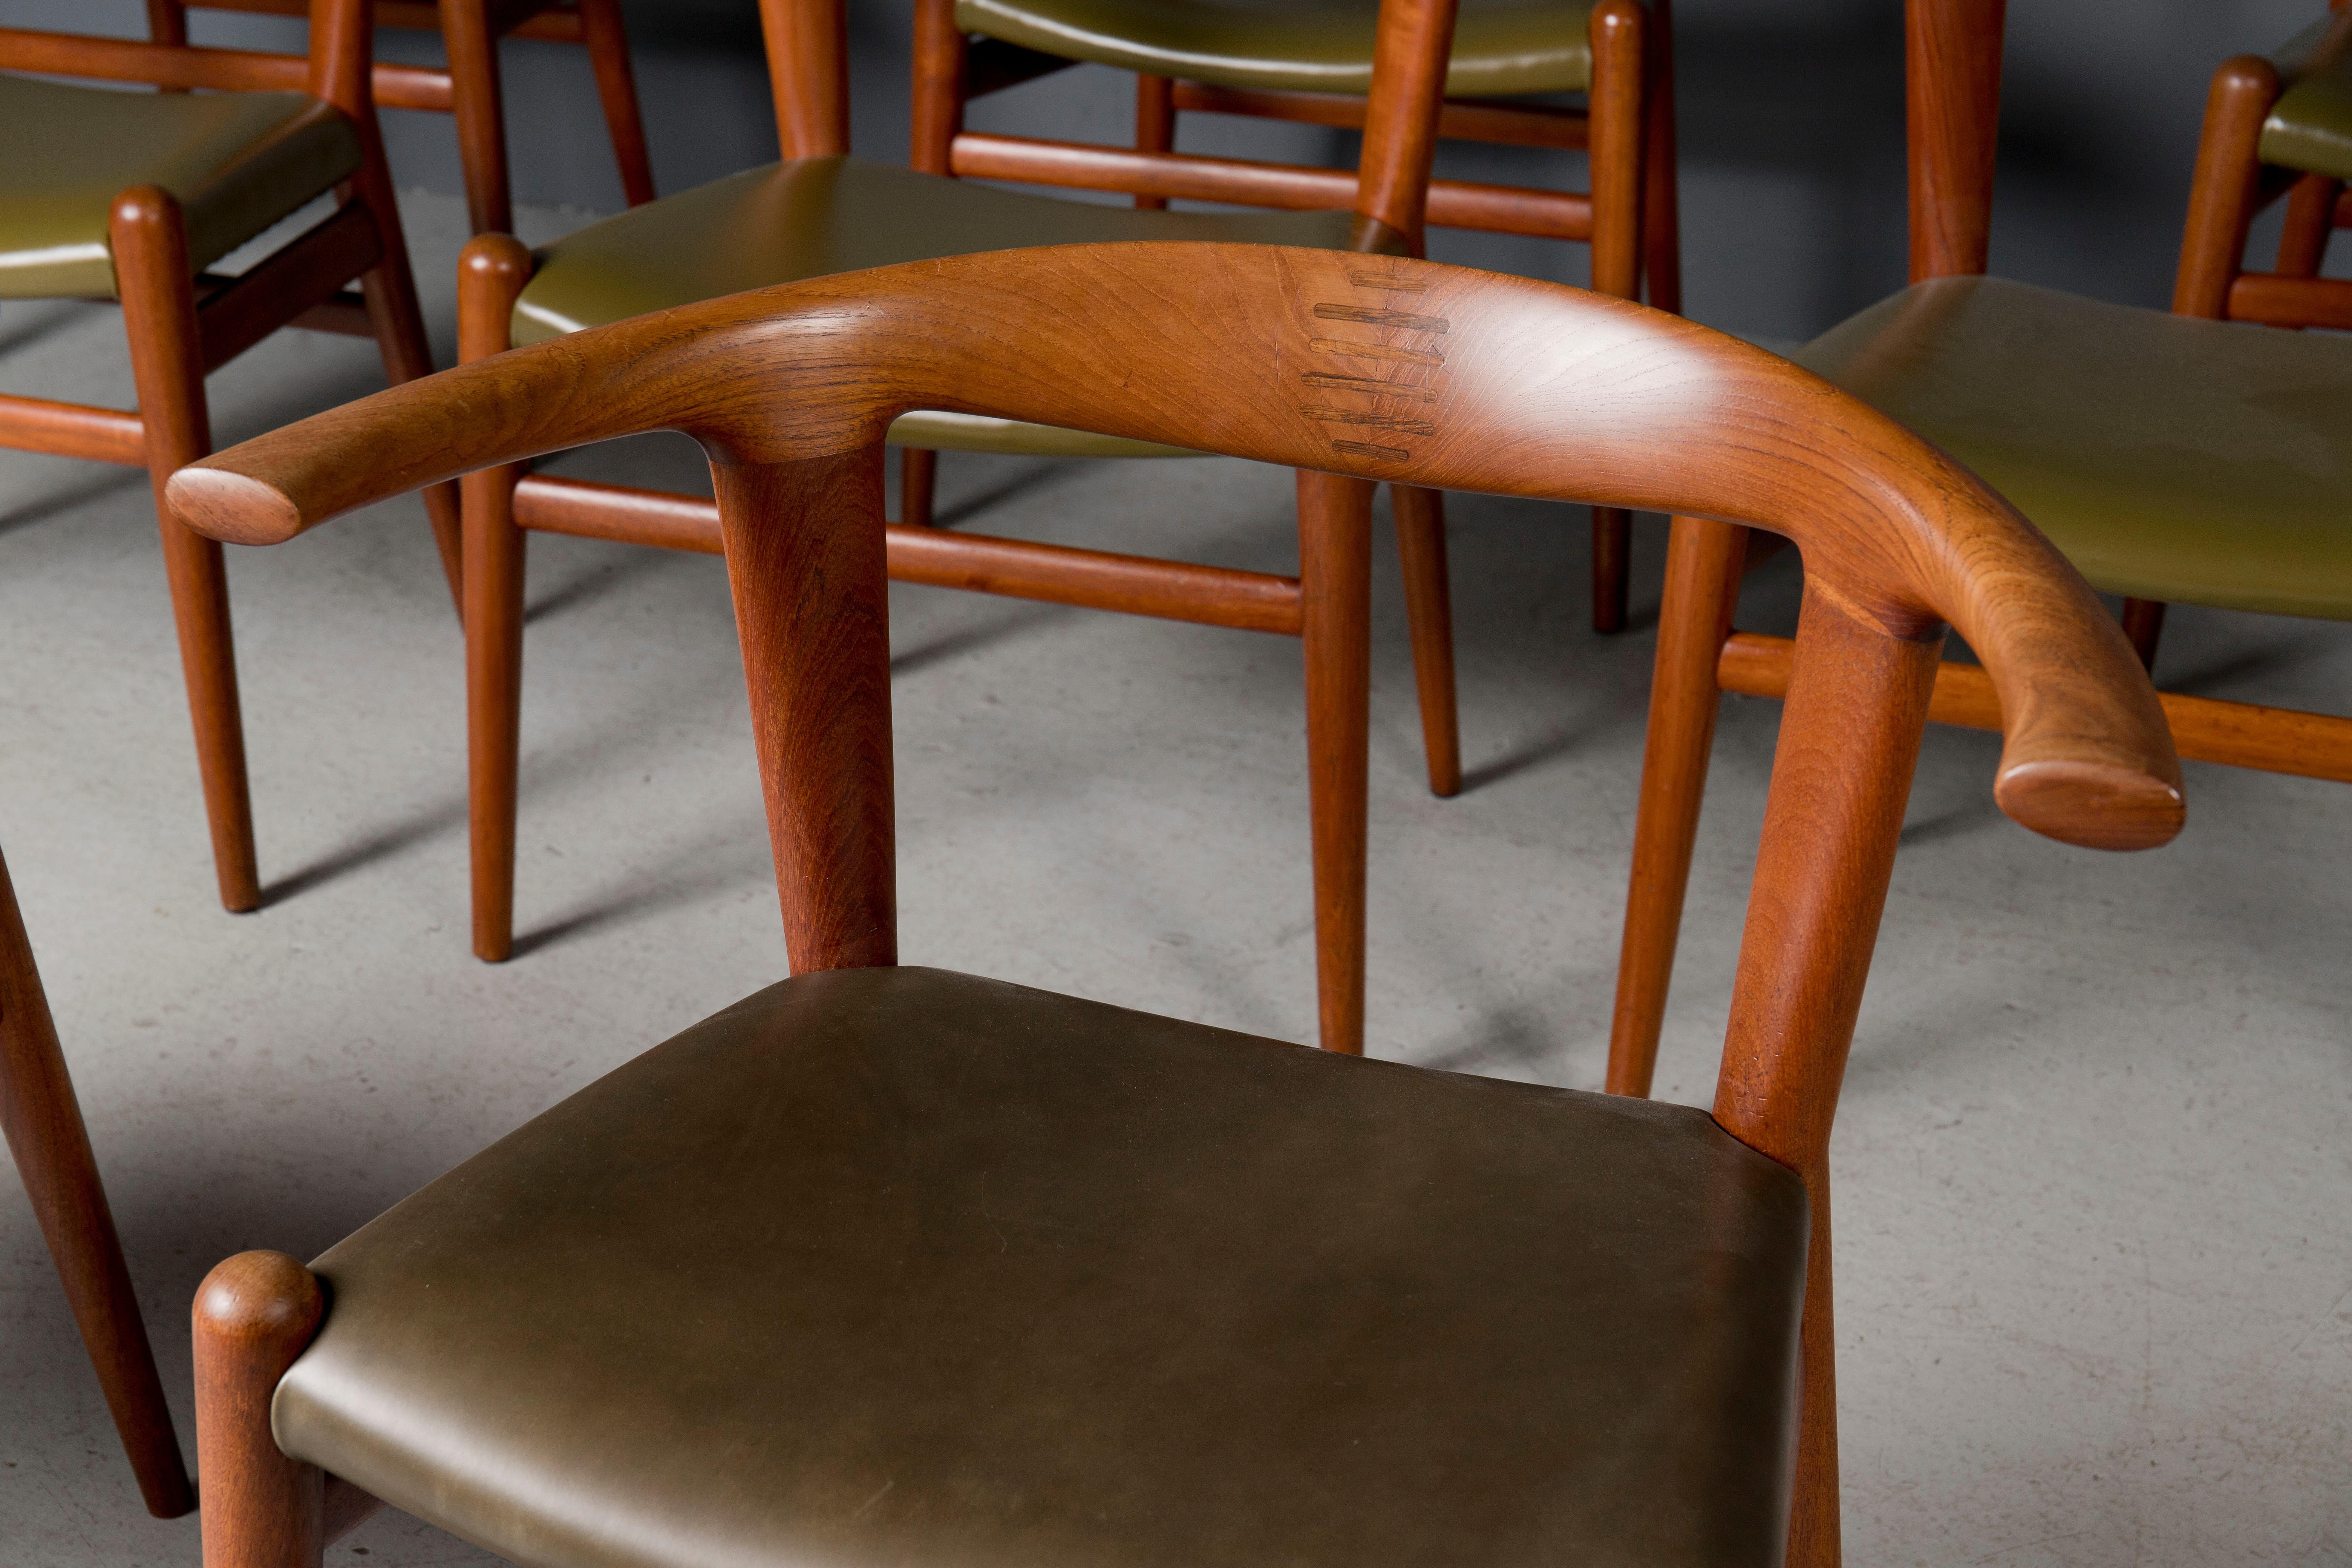 Äußerst seltener Satz von 8 originalen Hans J. Wegner Bullhorn-Stühlen. 

Diese Stühle sind aus Teakholz mit Palisanderholzverbindungen. Unglaublich gut gemacht und extrem bequem.